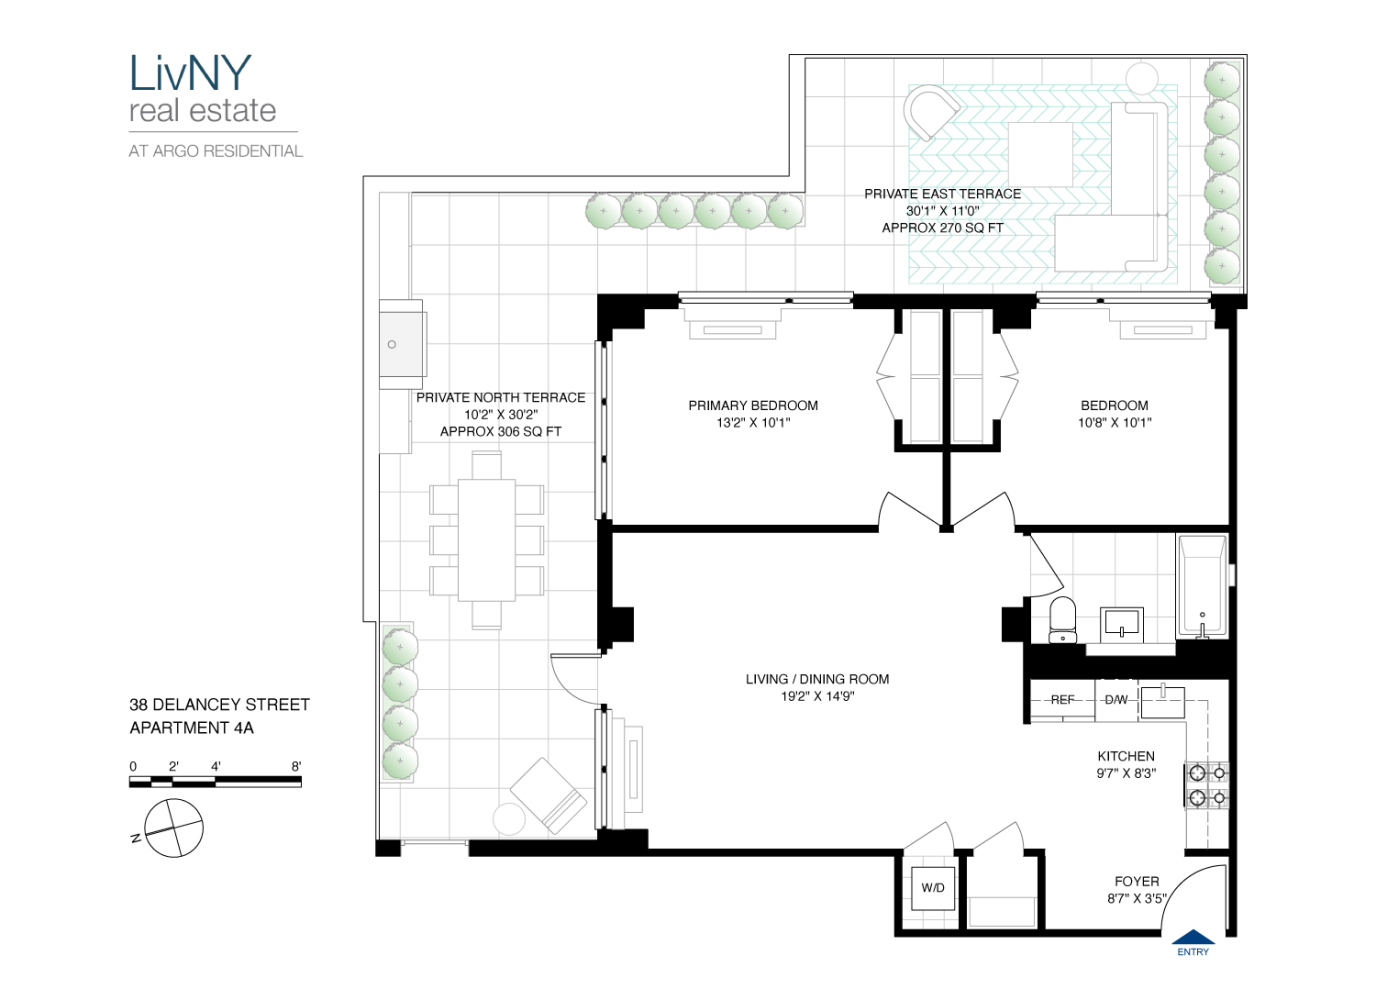 Floorplan for 38 Delancey Street, 4A